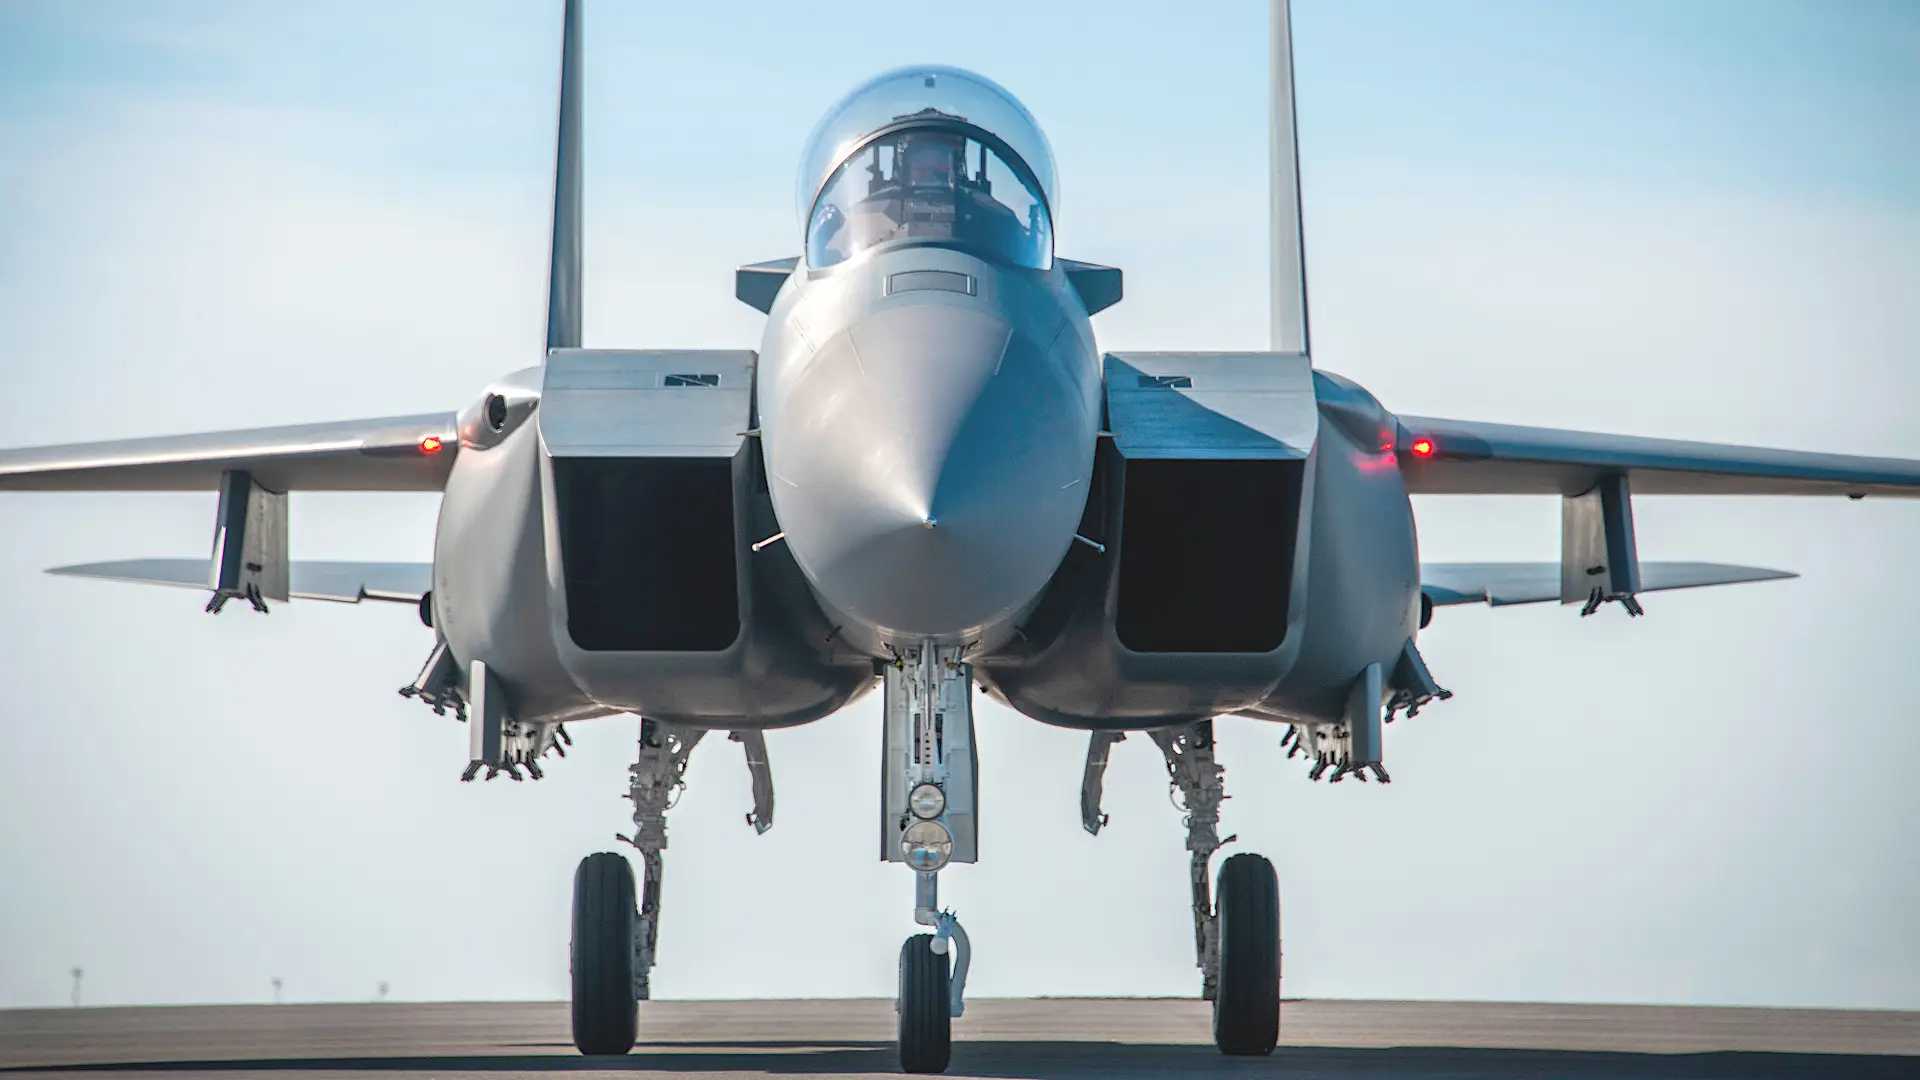 Aufgerüstete F-15EX Eagle II Kampfflugzeuge erhalten konforme Tanks zur Erhöhung der Reichweite